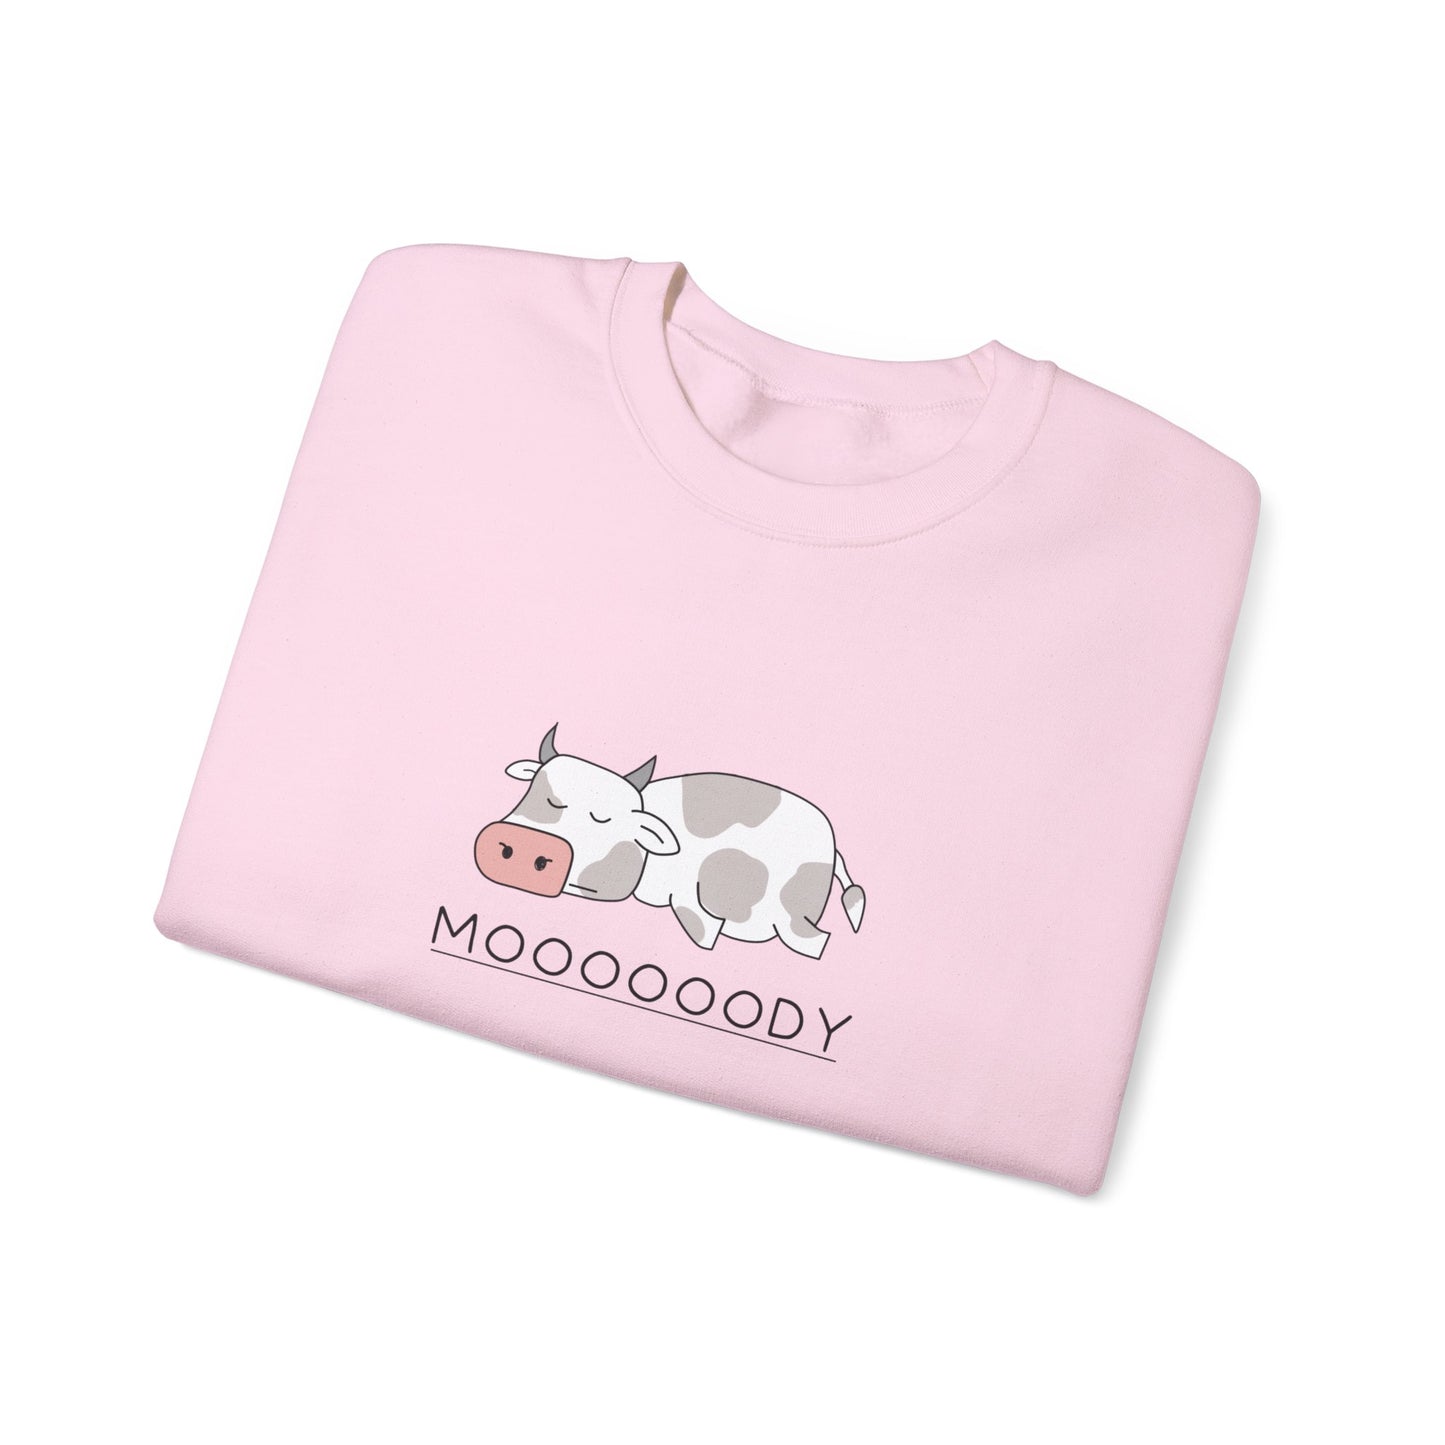 Moooody sweatshirt